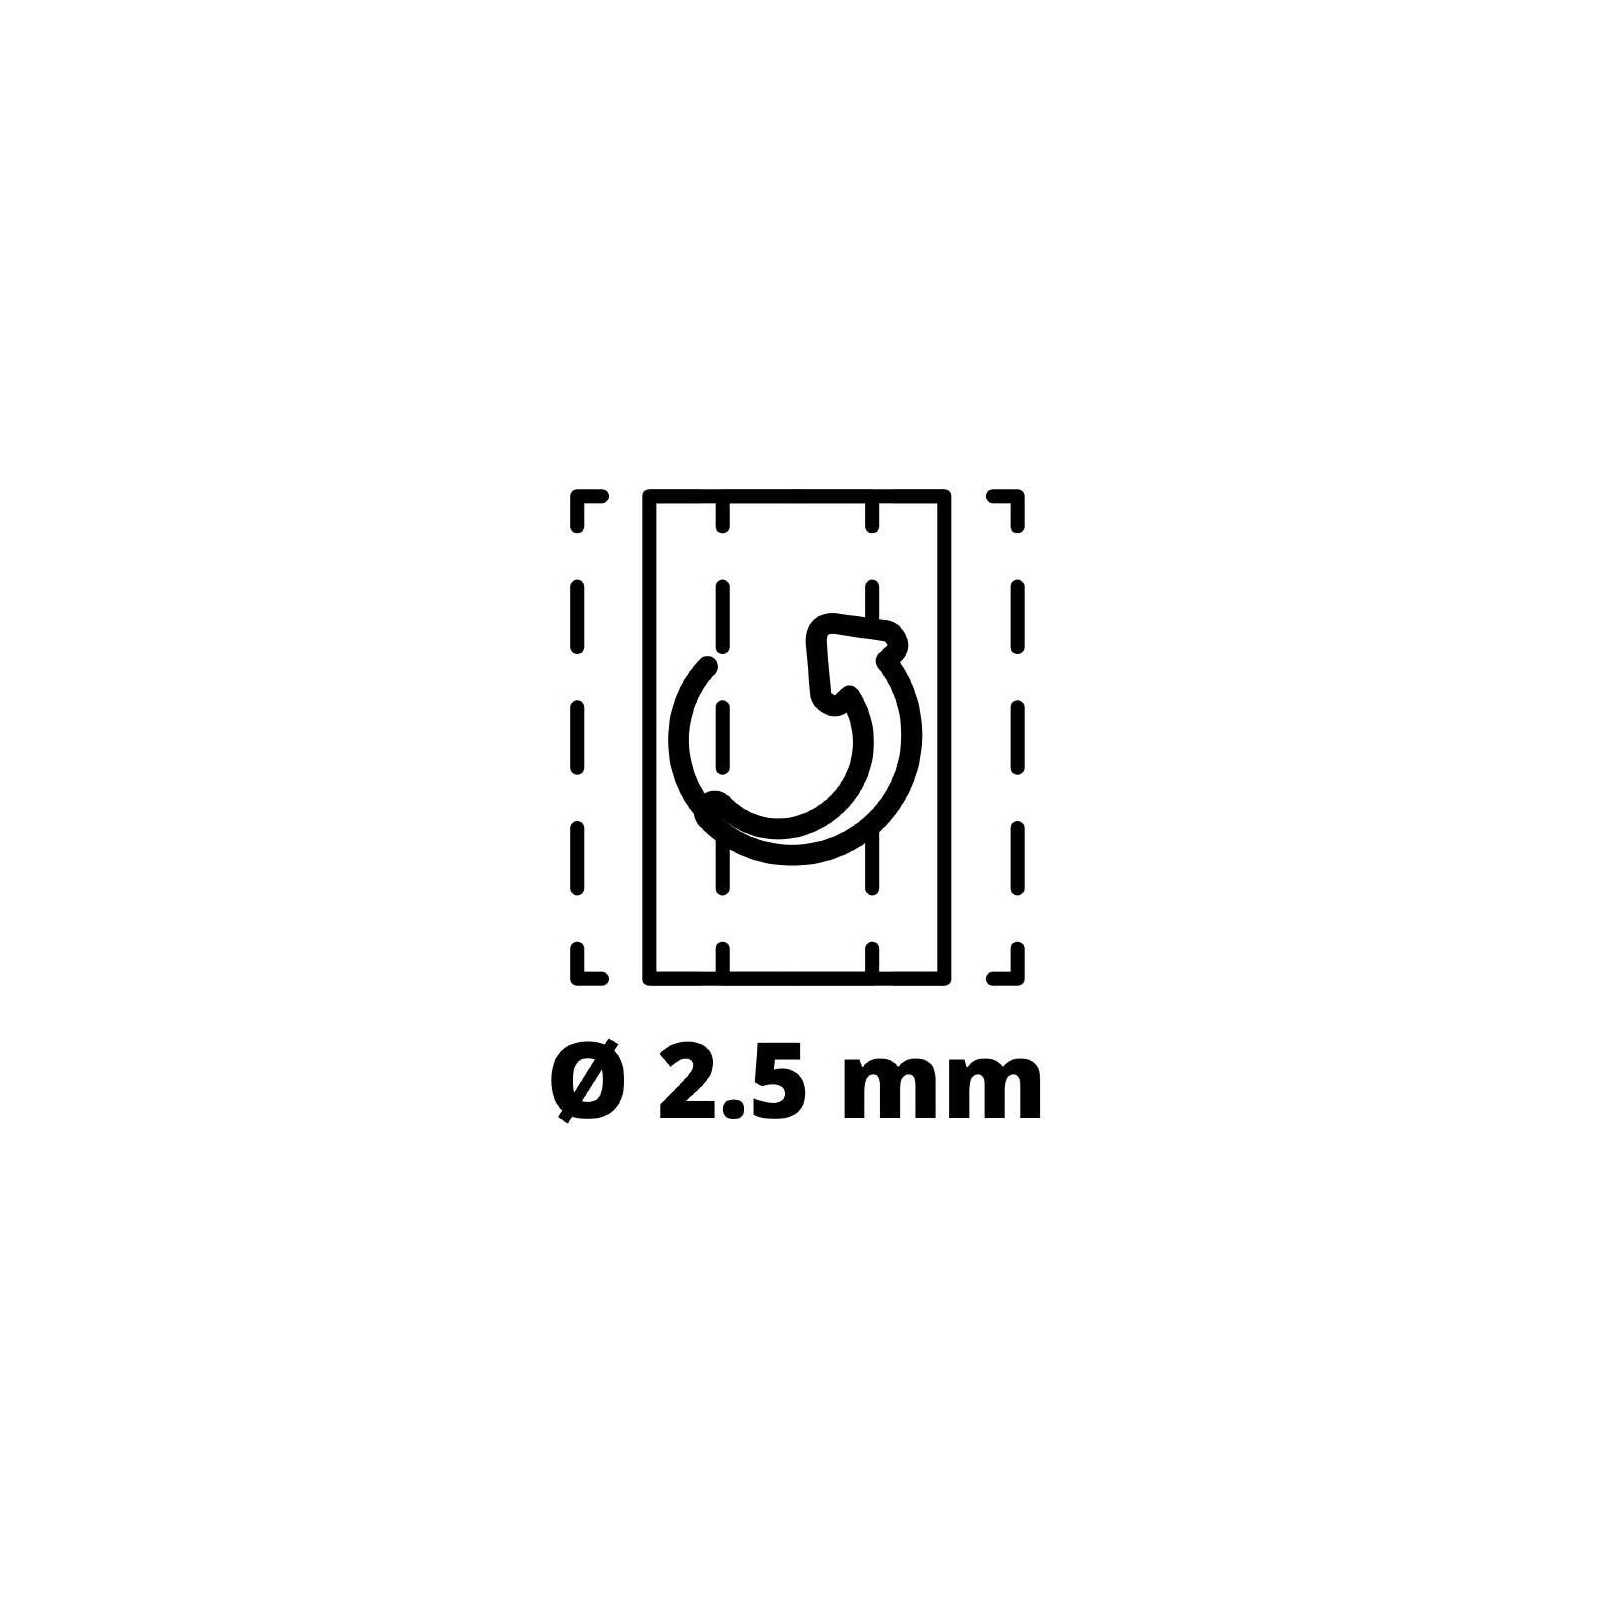 Шліфувальна машина Einhell TE-OS 18/230 Li - Solo, PXC, 18В, 230х115 мм (без АКБ та ЗП) (4460720) зображення 10